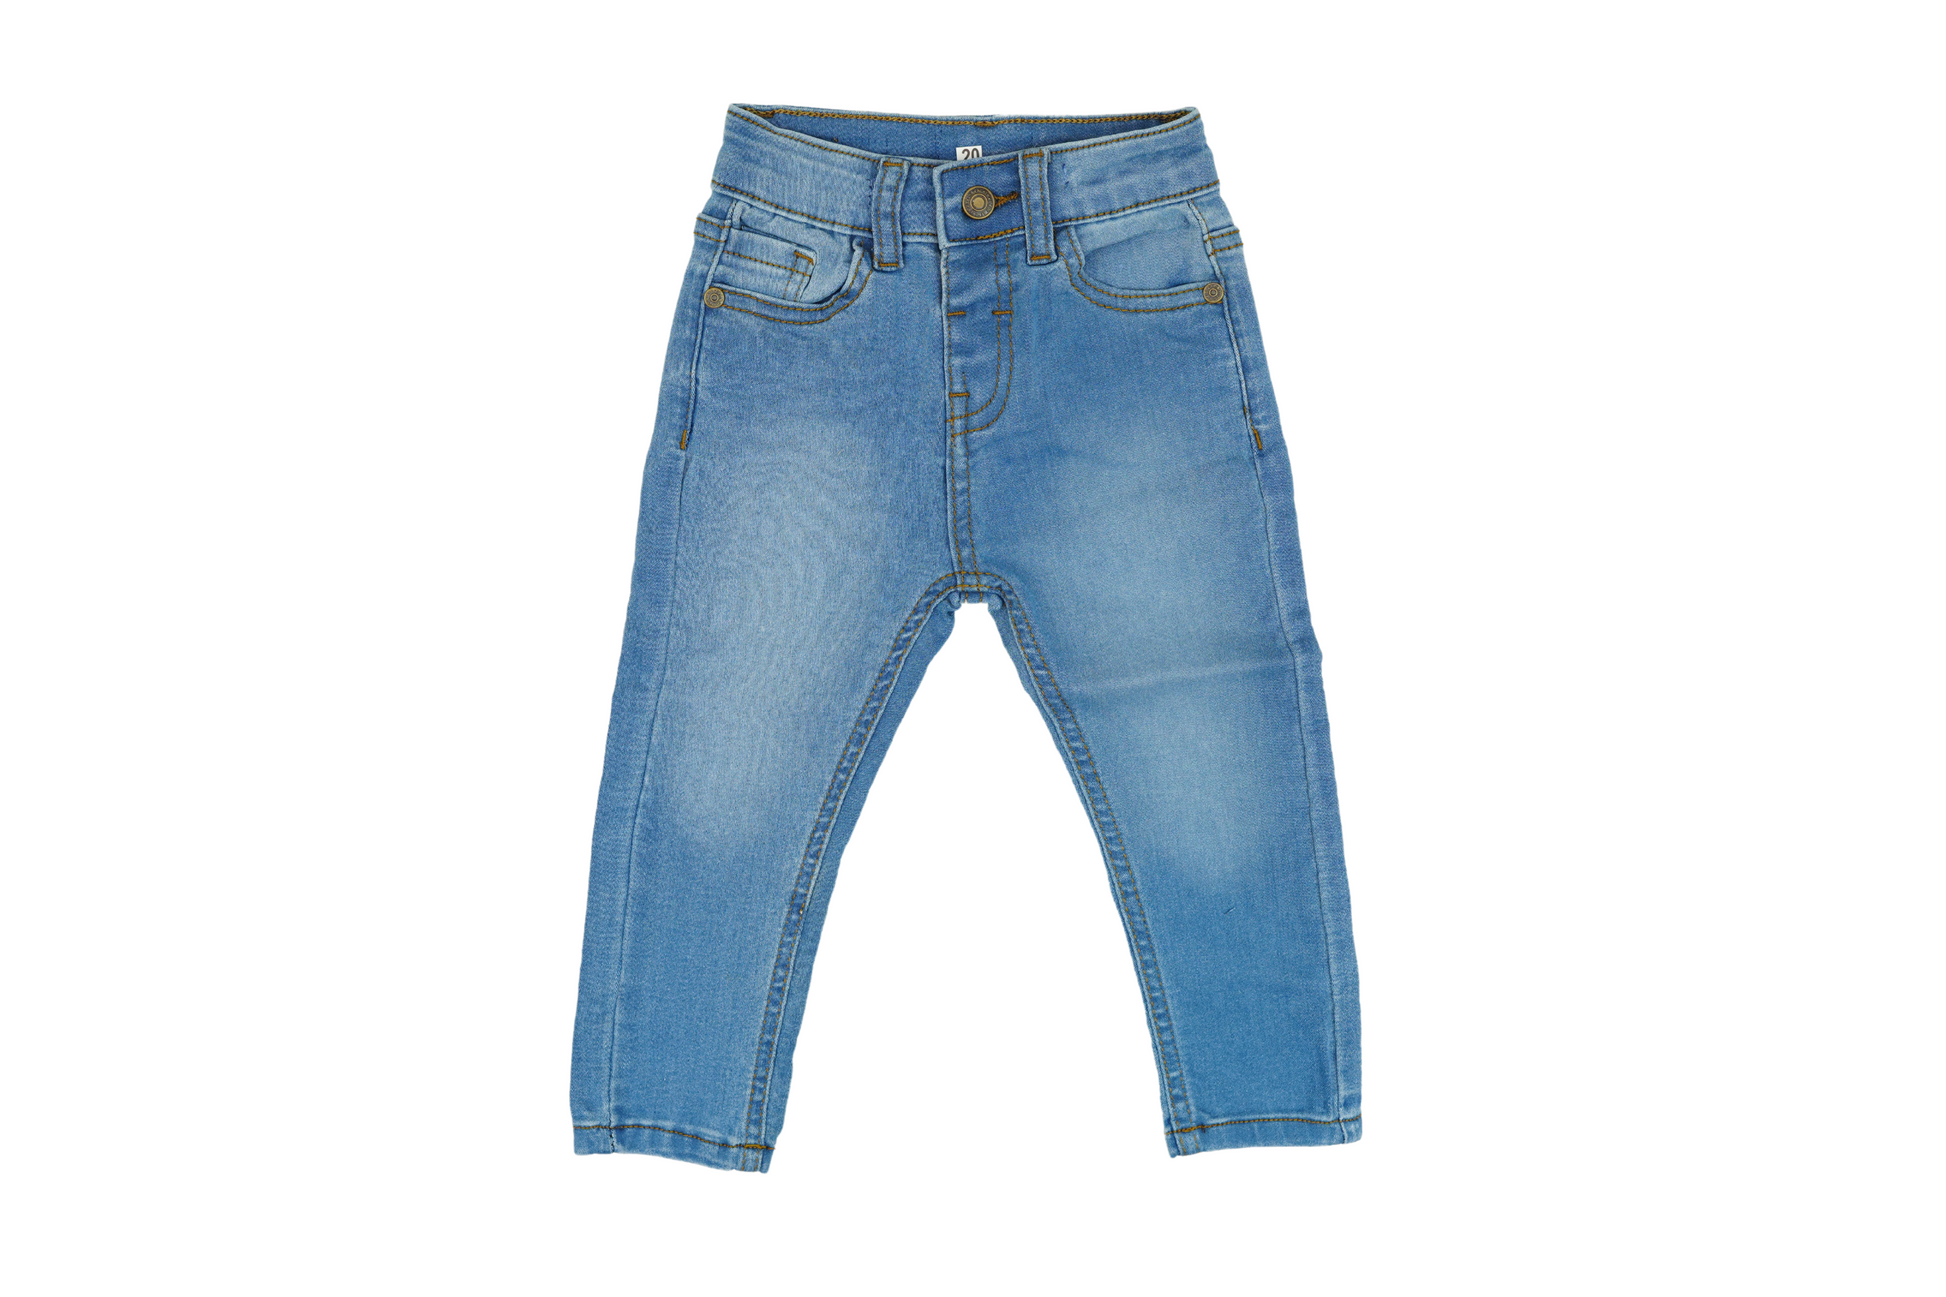 100% Pure Denim Pants for Boys (Light Blue) - Miniwears